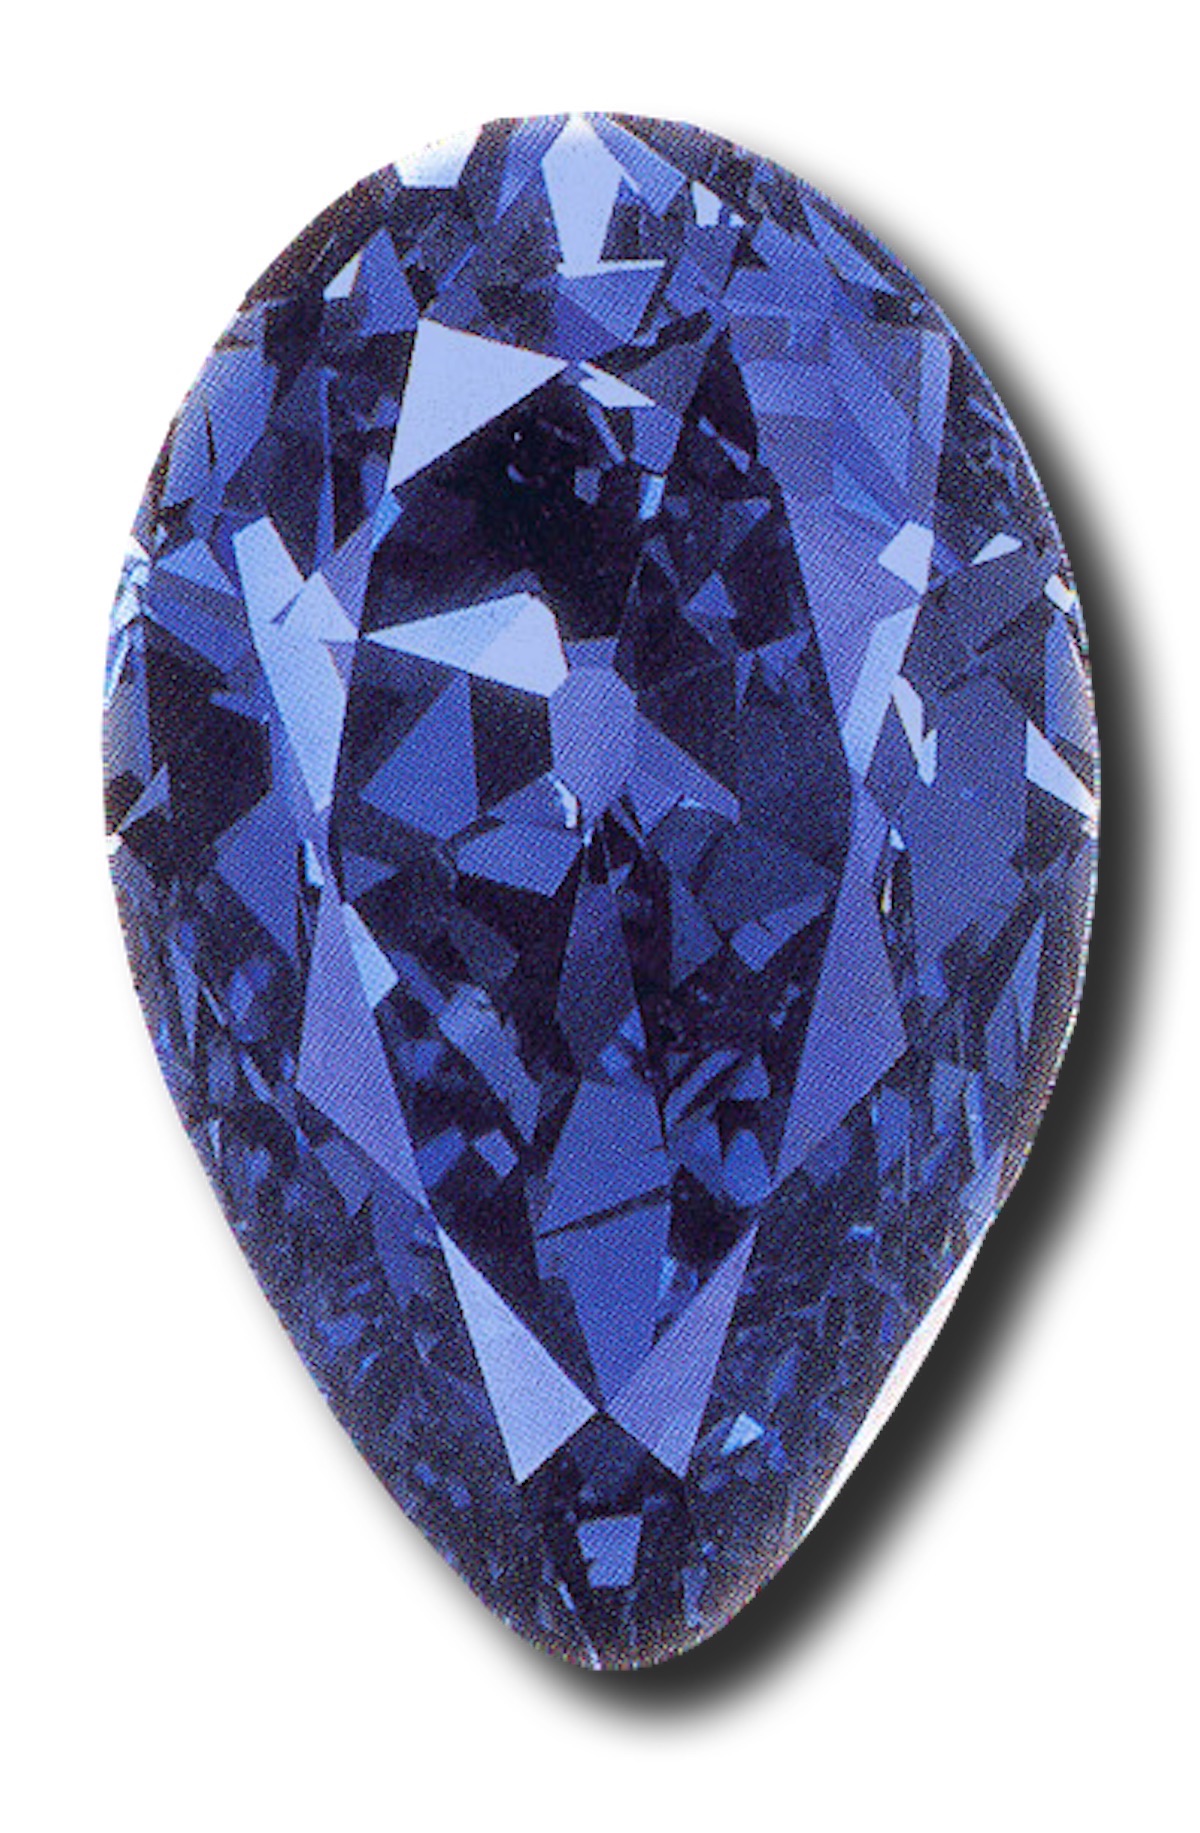 Алмаз «Терещенко» на момент приобретения Михаилом Терещенко был вторым по величине синим алмазом в мире. Фотография любезно предоставлена домом Cartier